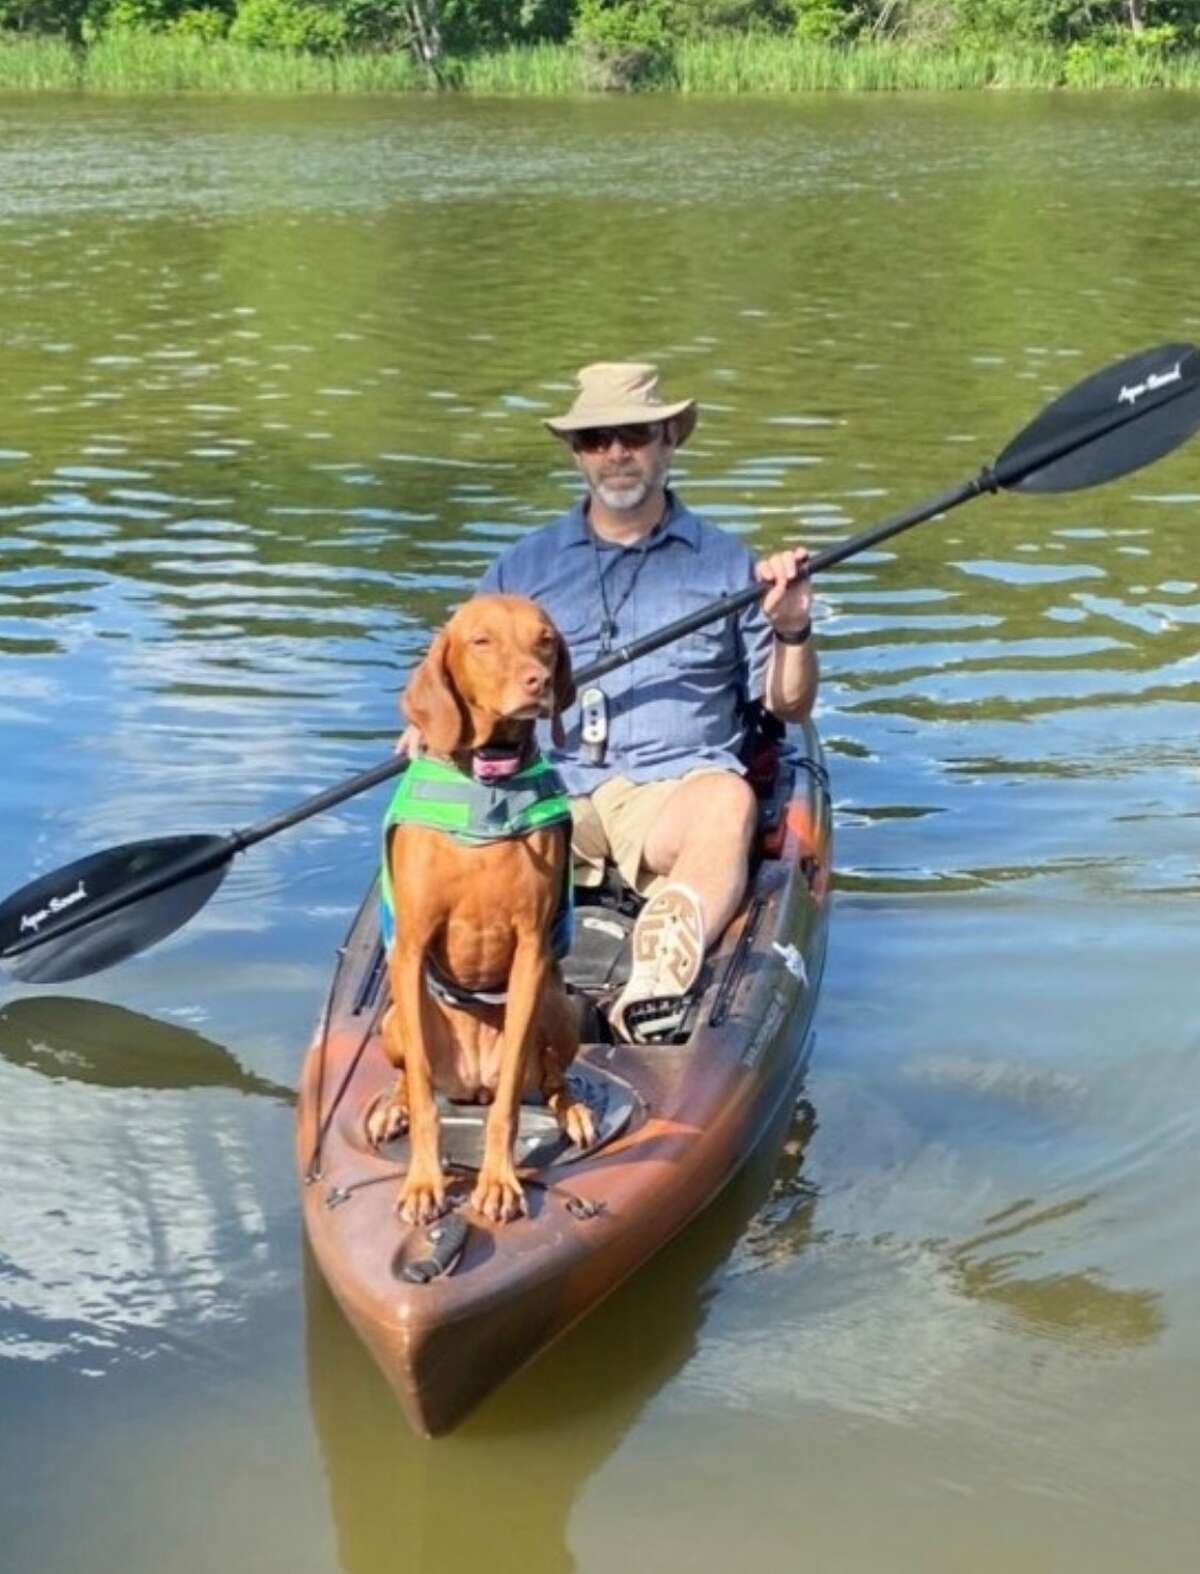 Robert and their dog, Jersey on a kayak